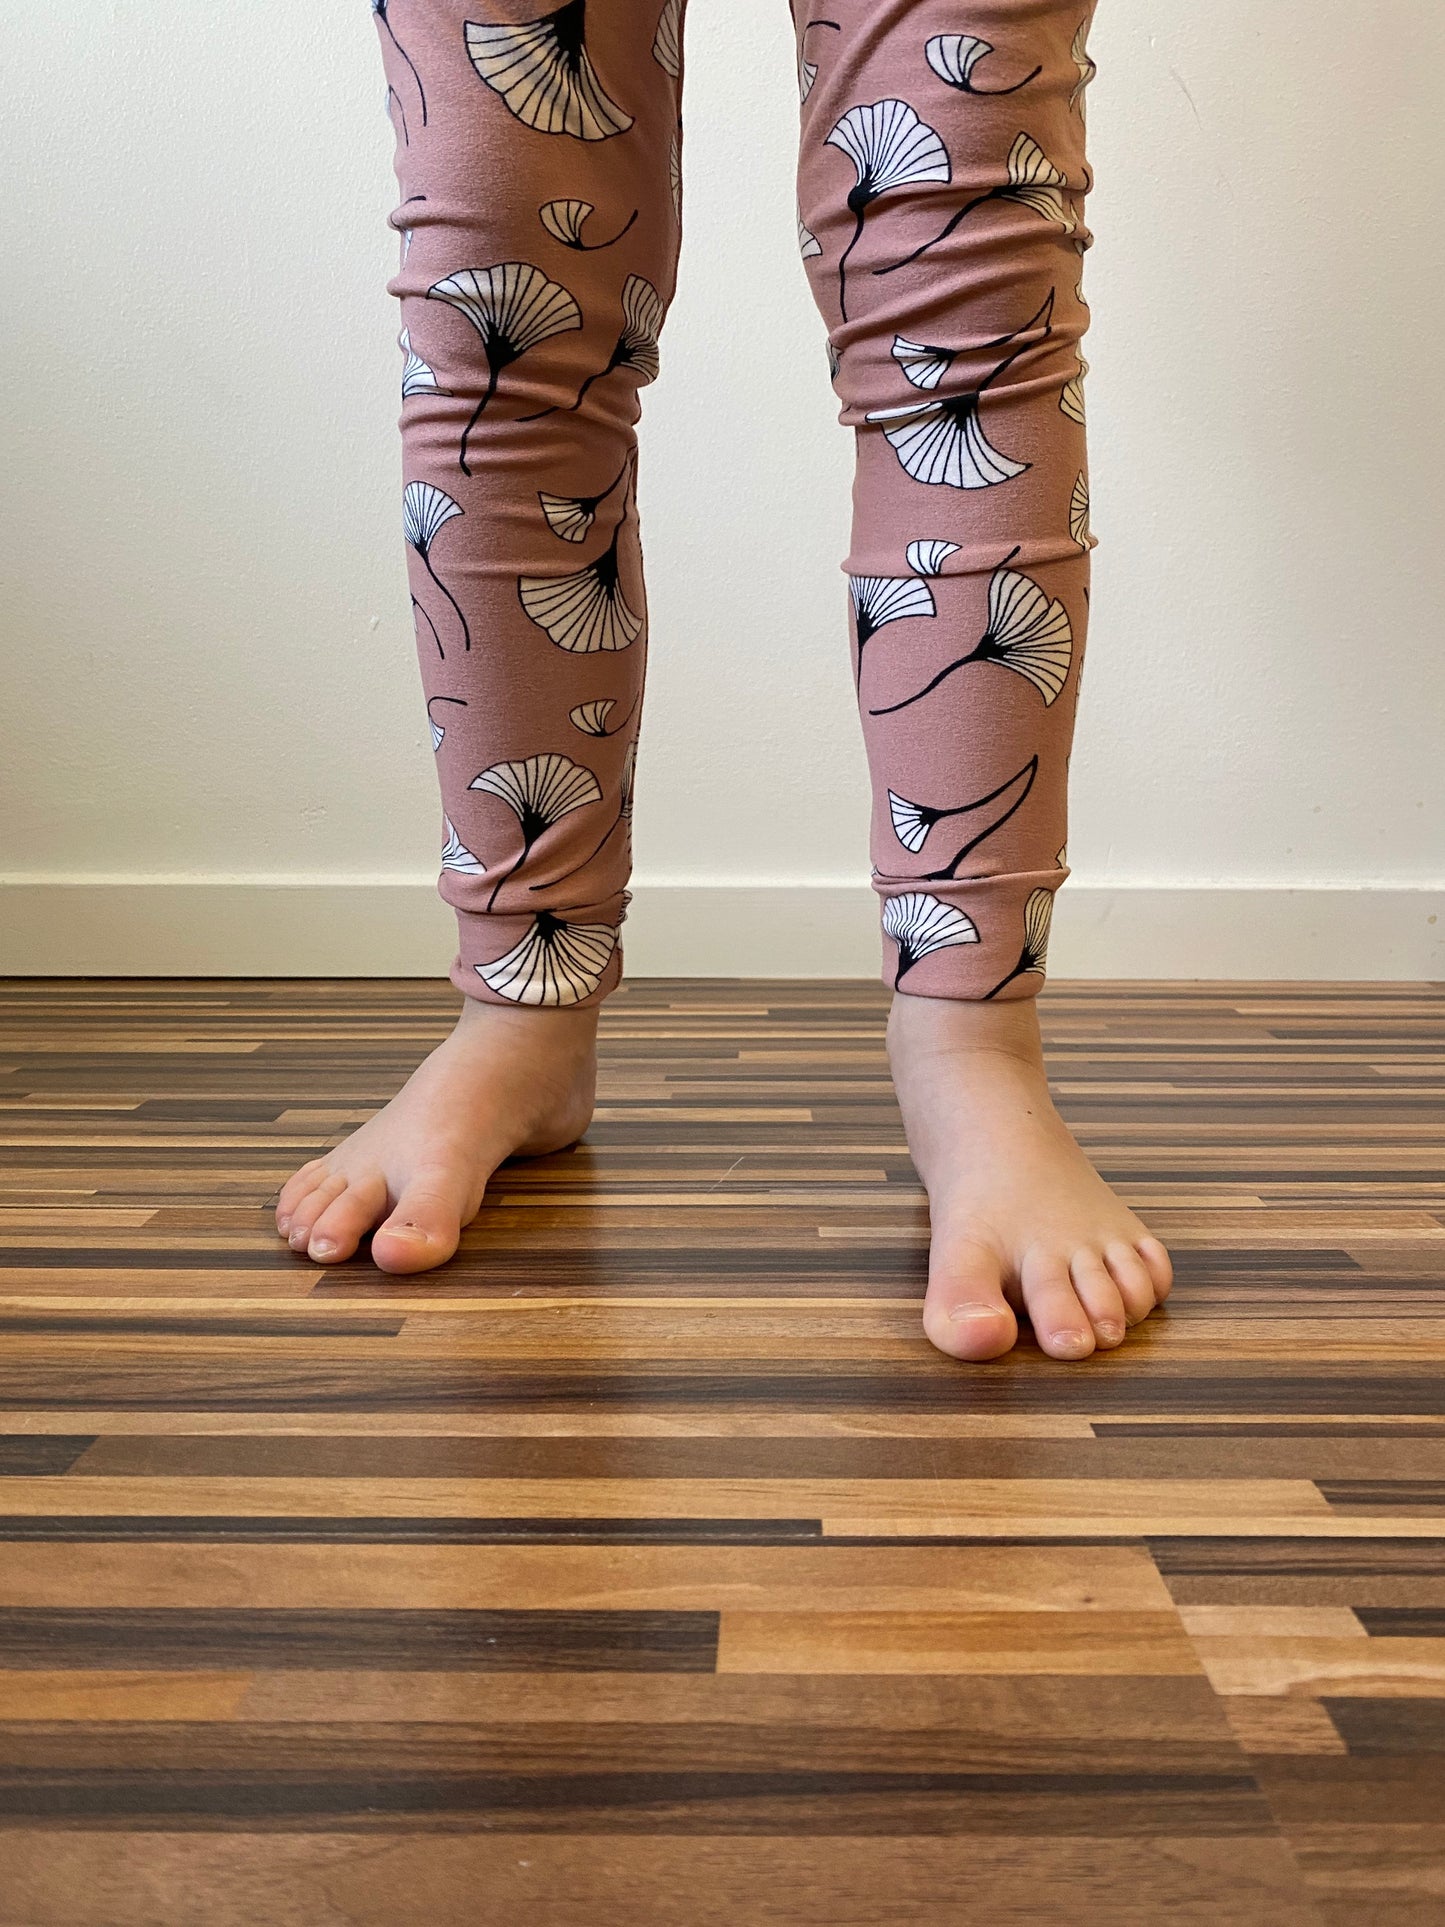 Kids Cuffed Legging Pattern